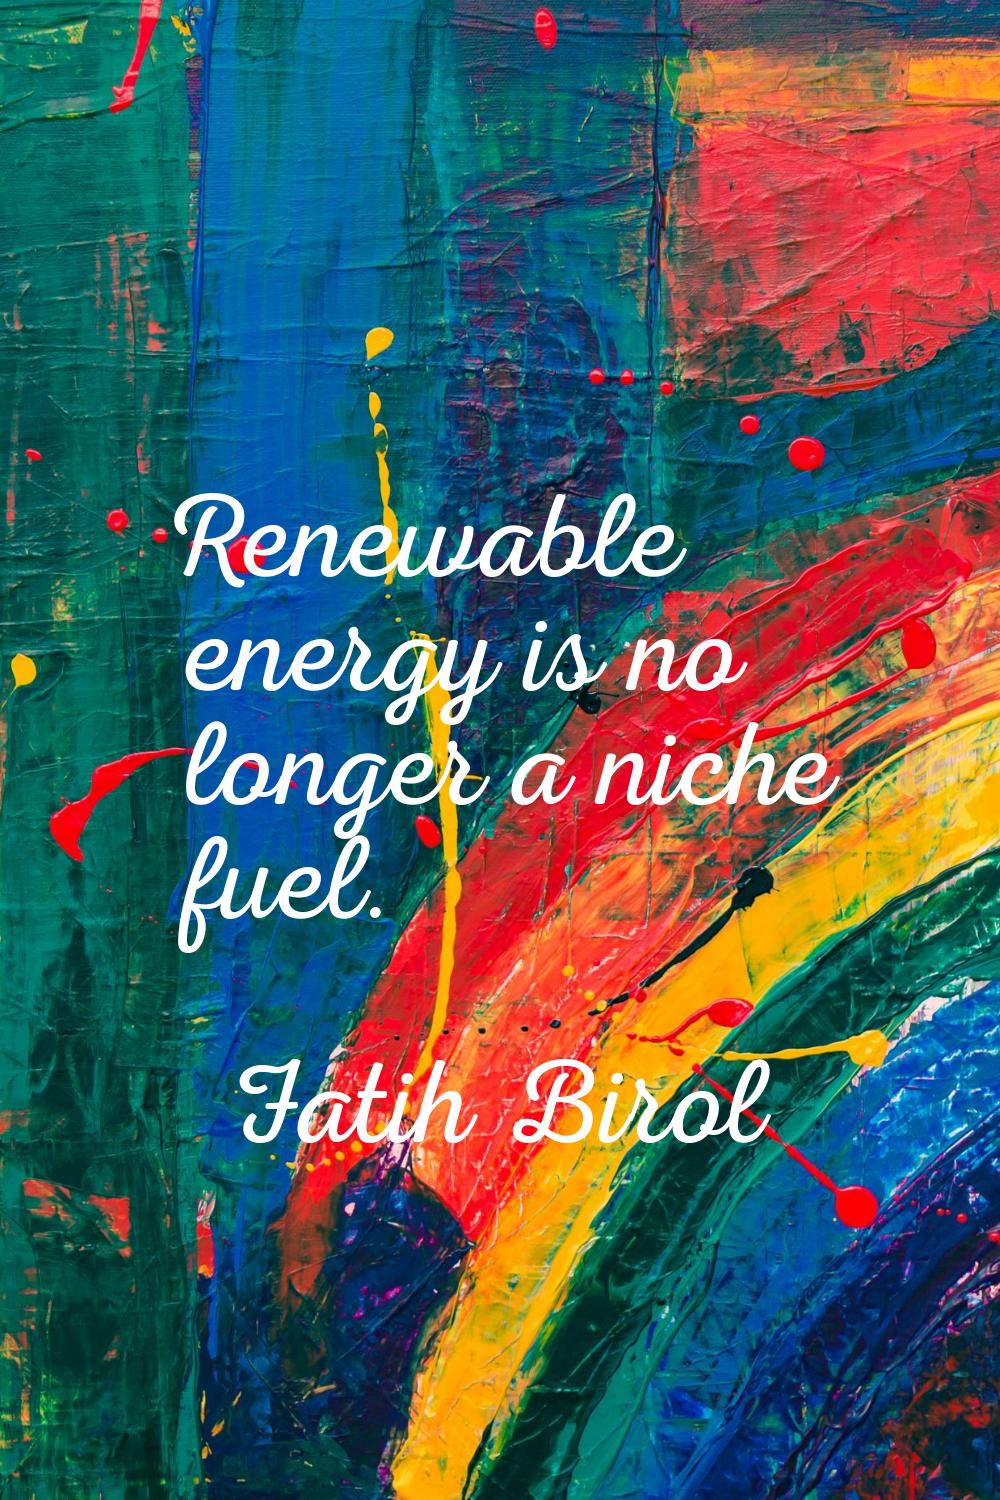 Renewable energy is no longer a niche fuel.